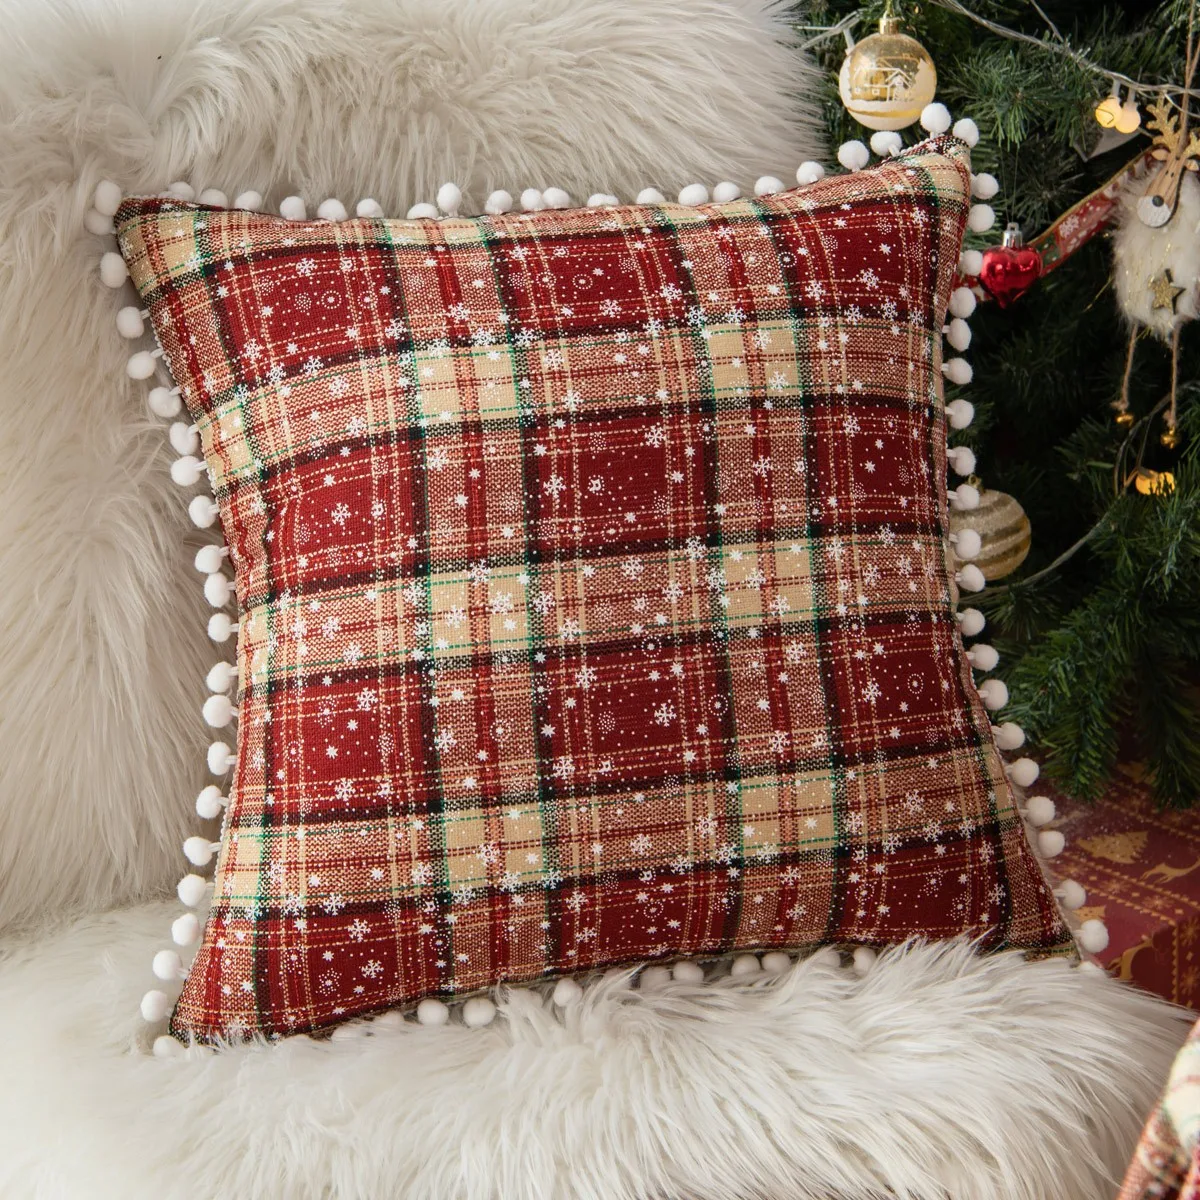 https://ae01.alicdn.com/kf/S3776cee445f041428e04c91afdaaf9e0G/Christmas-Cushion-Cover-Scottish-Tartan-Plaid-Throw-Pillow-Cover-Farmhouse-Classic-Decorative-Pillowcase-For-Home-Decor.jpg